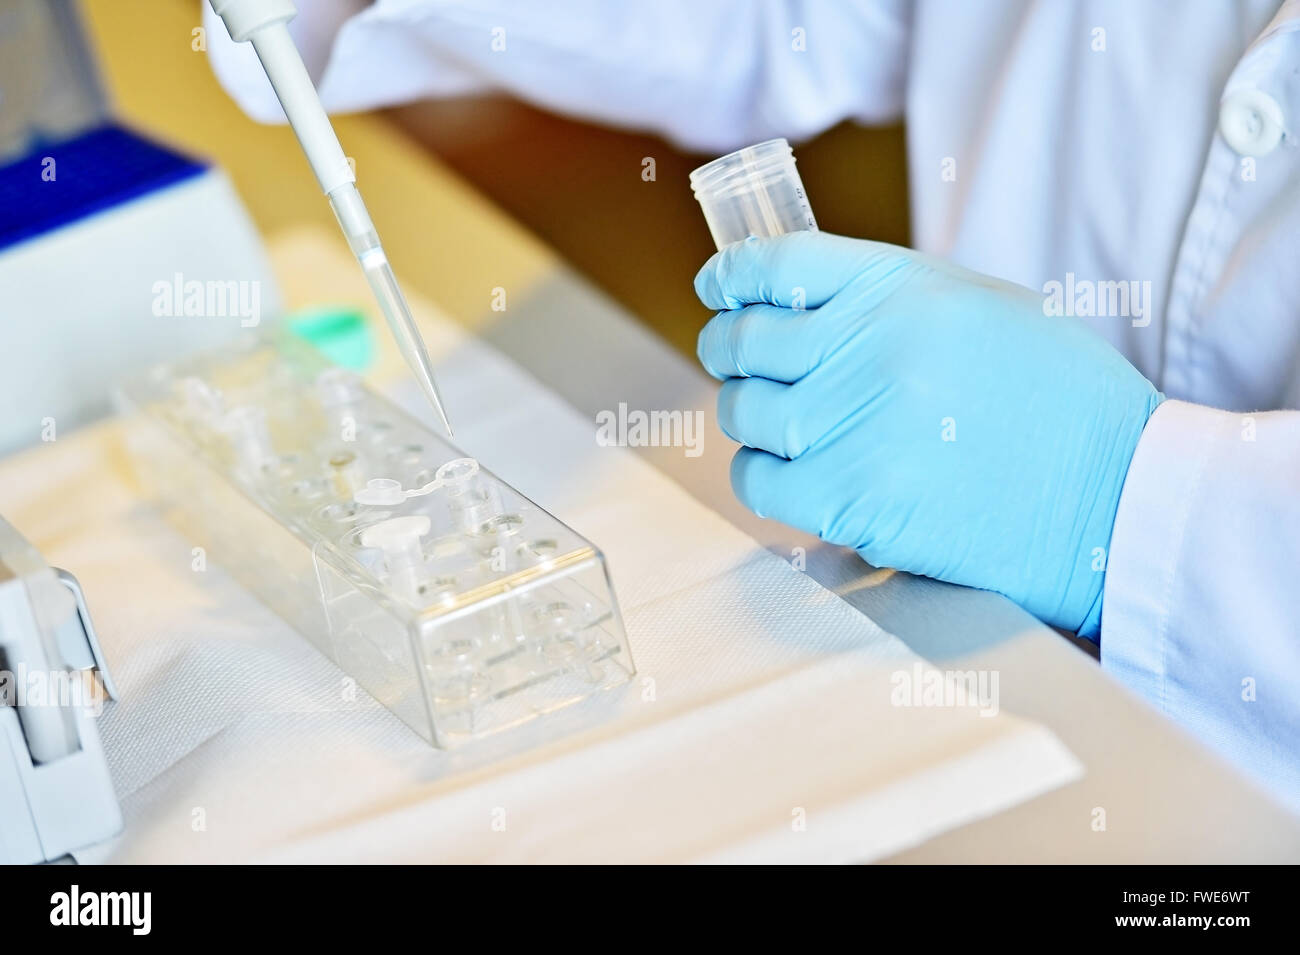 Détail avec mains chercheur travaillant avec compte-gouttes et des tubes médicaux dans un laboratoire d'effectuer un test ADN Banque D'Images